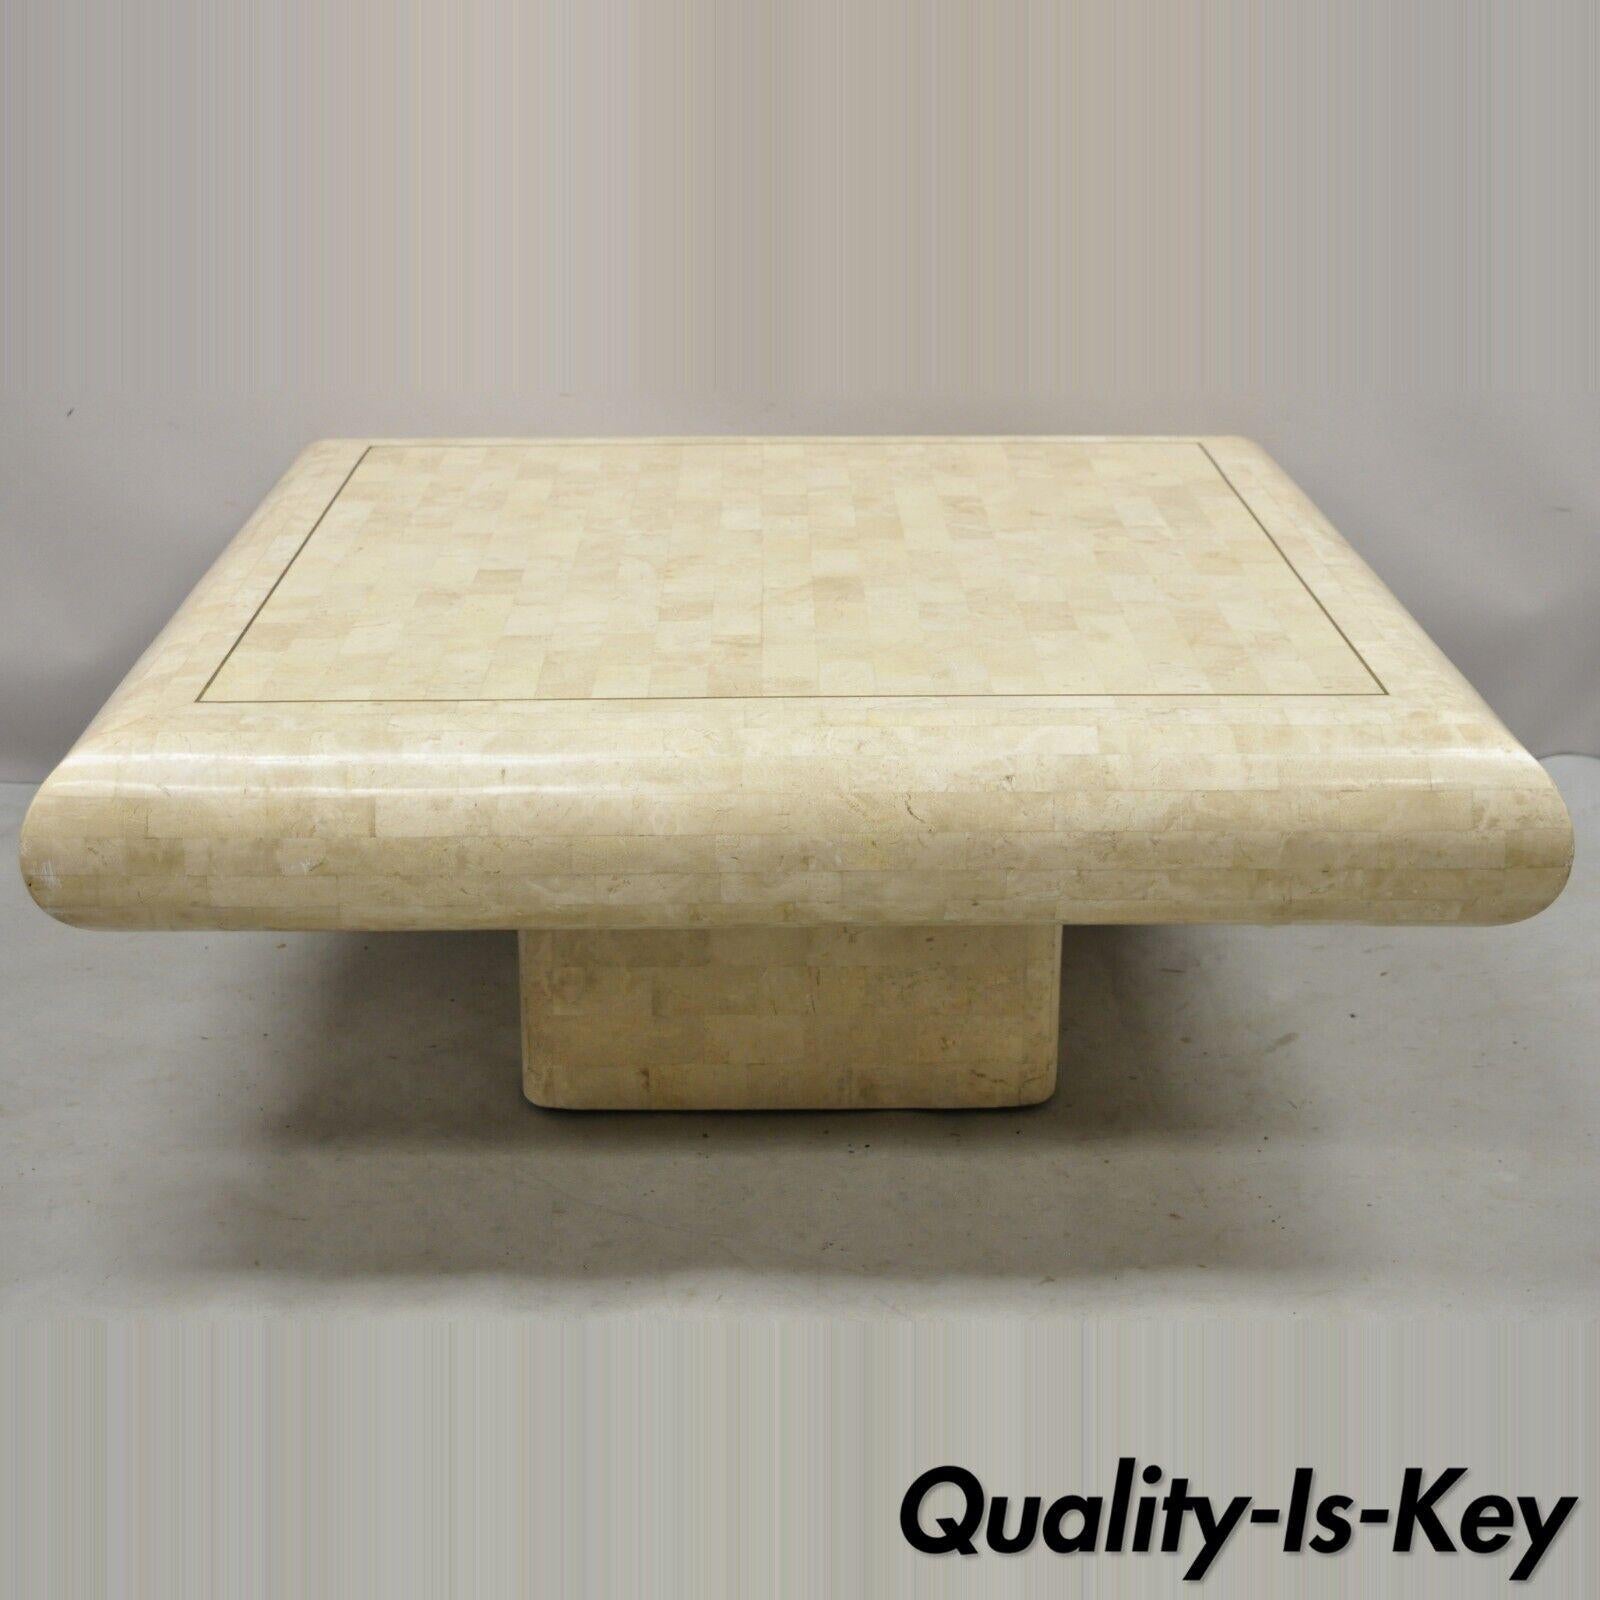 Vintage Maitland Smith Table basse carrée moderne avec incrustation de pierres tessellées. L'article est doté d'une garniture en laiton, d'une marqueterie de pierre tessellée, d'une base sur piédestal, de lignes modernistes épurées, d'un style et